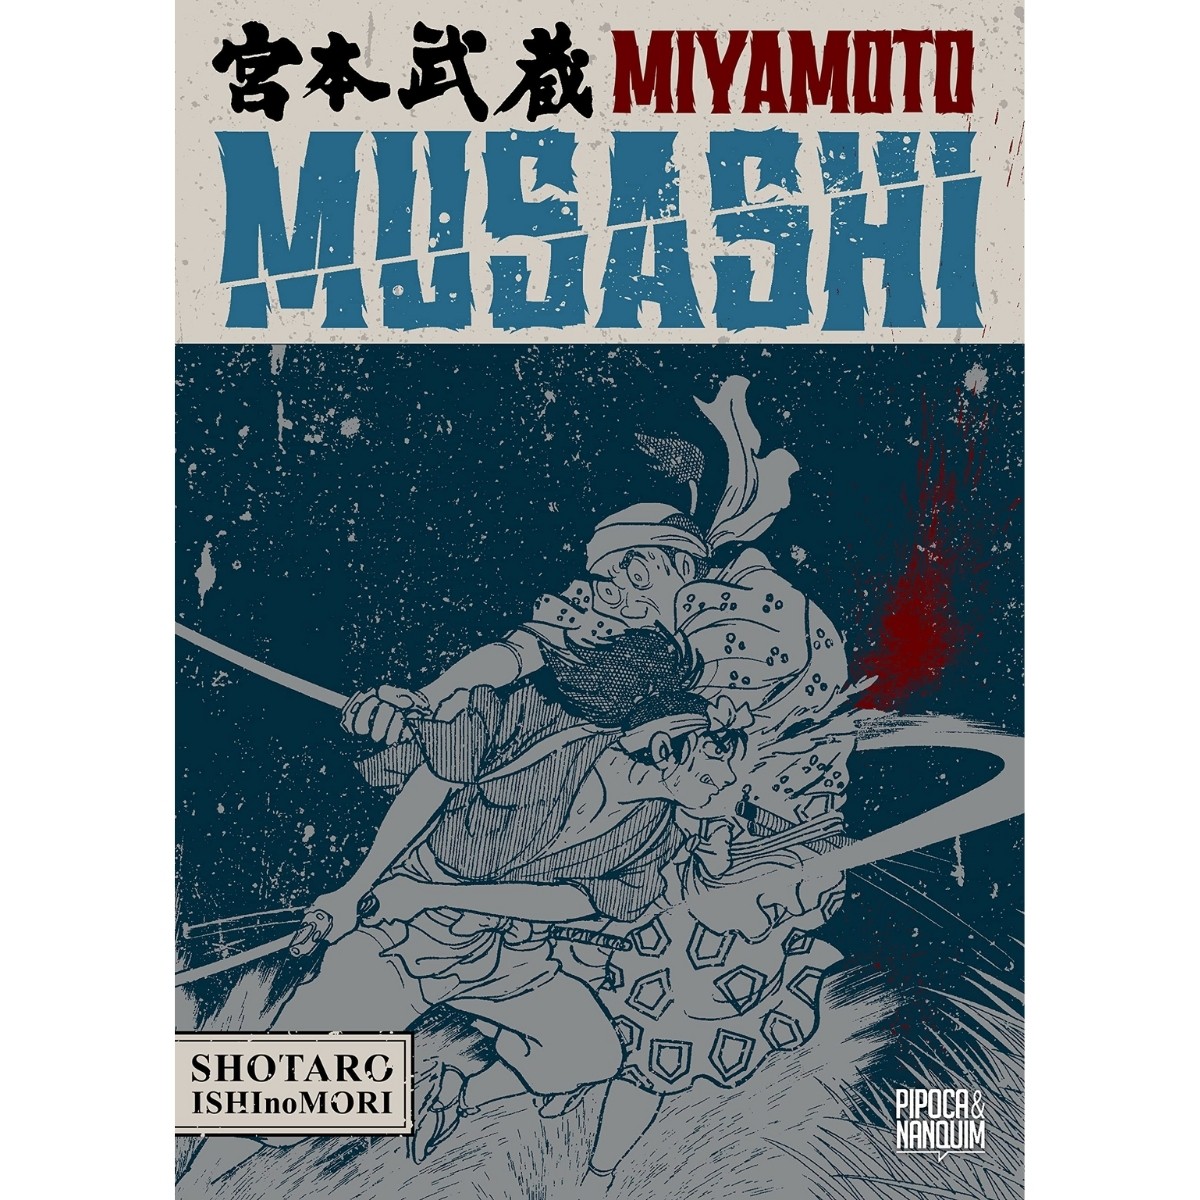 Miyamoto Musashi: Biografia em Mangá - Pipoca e Nanquim